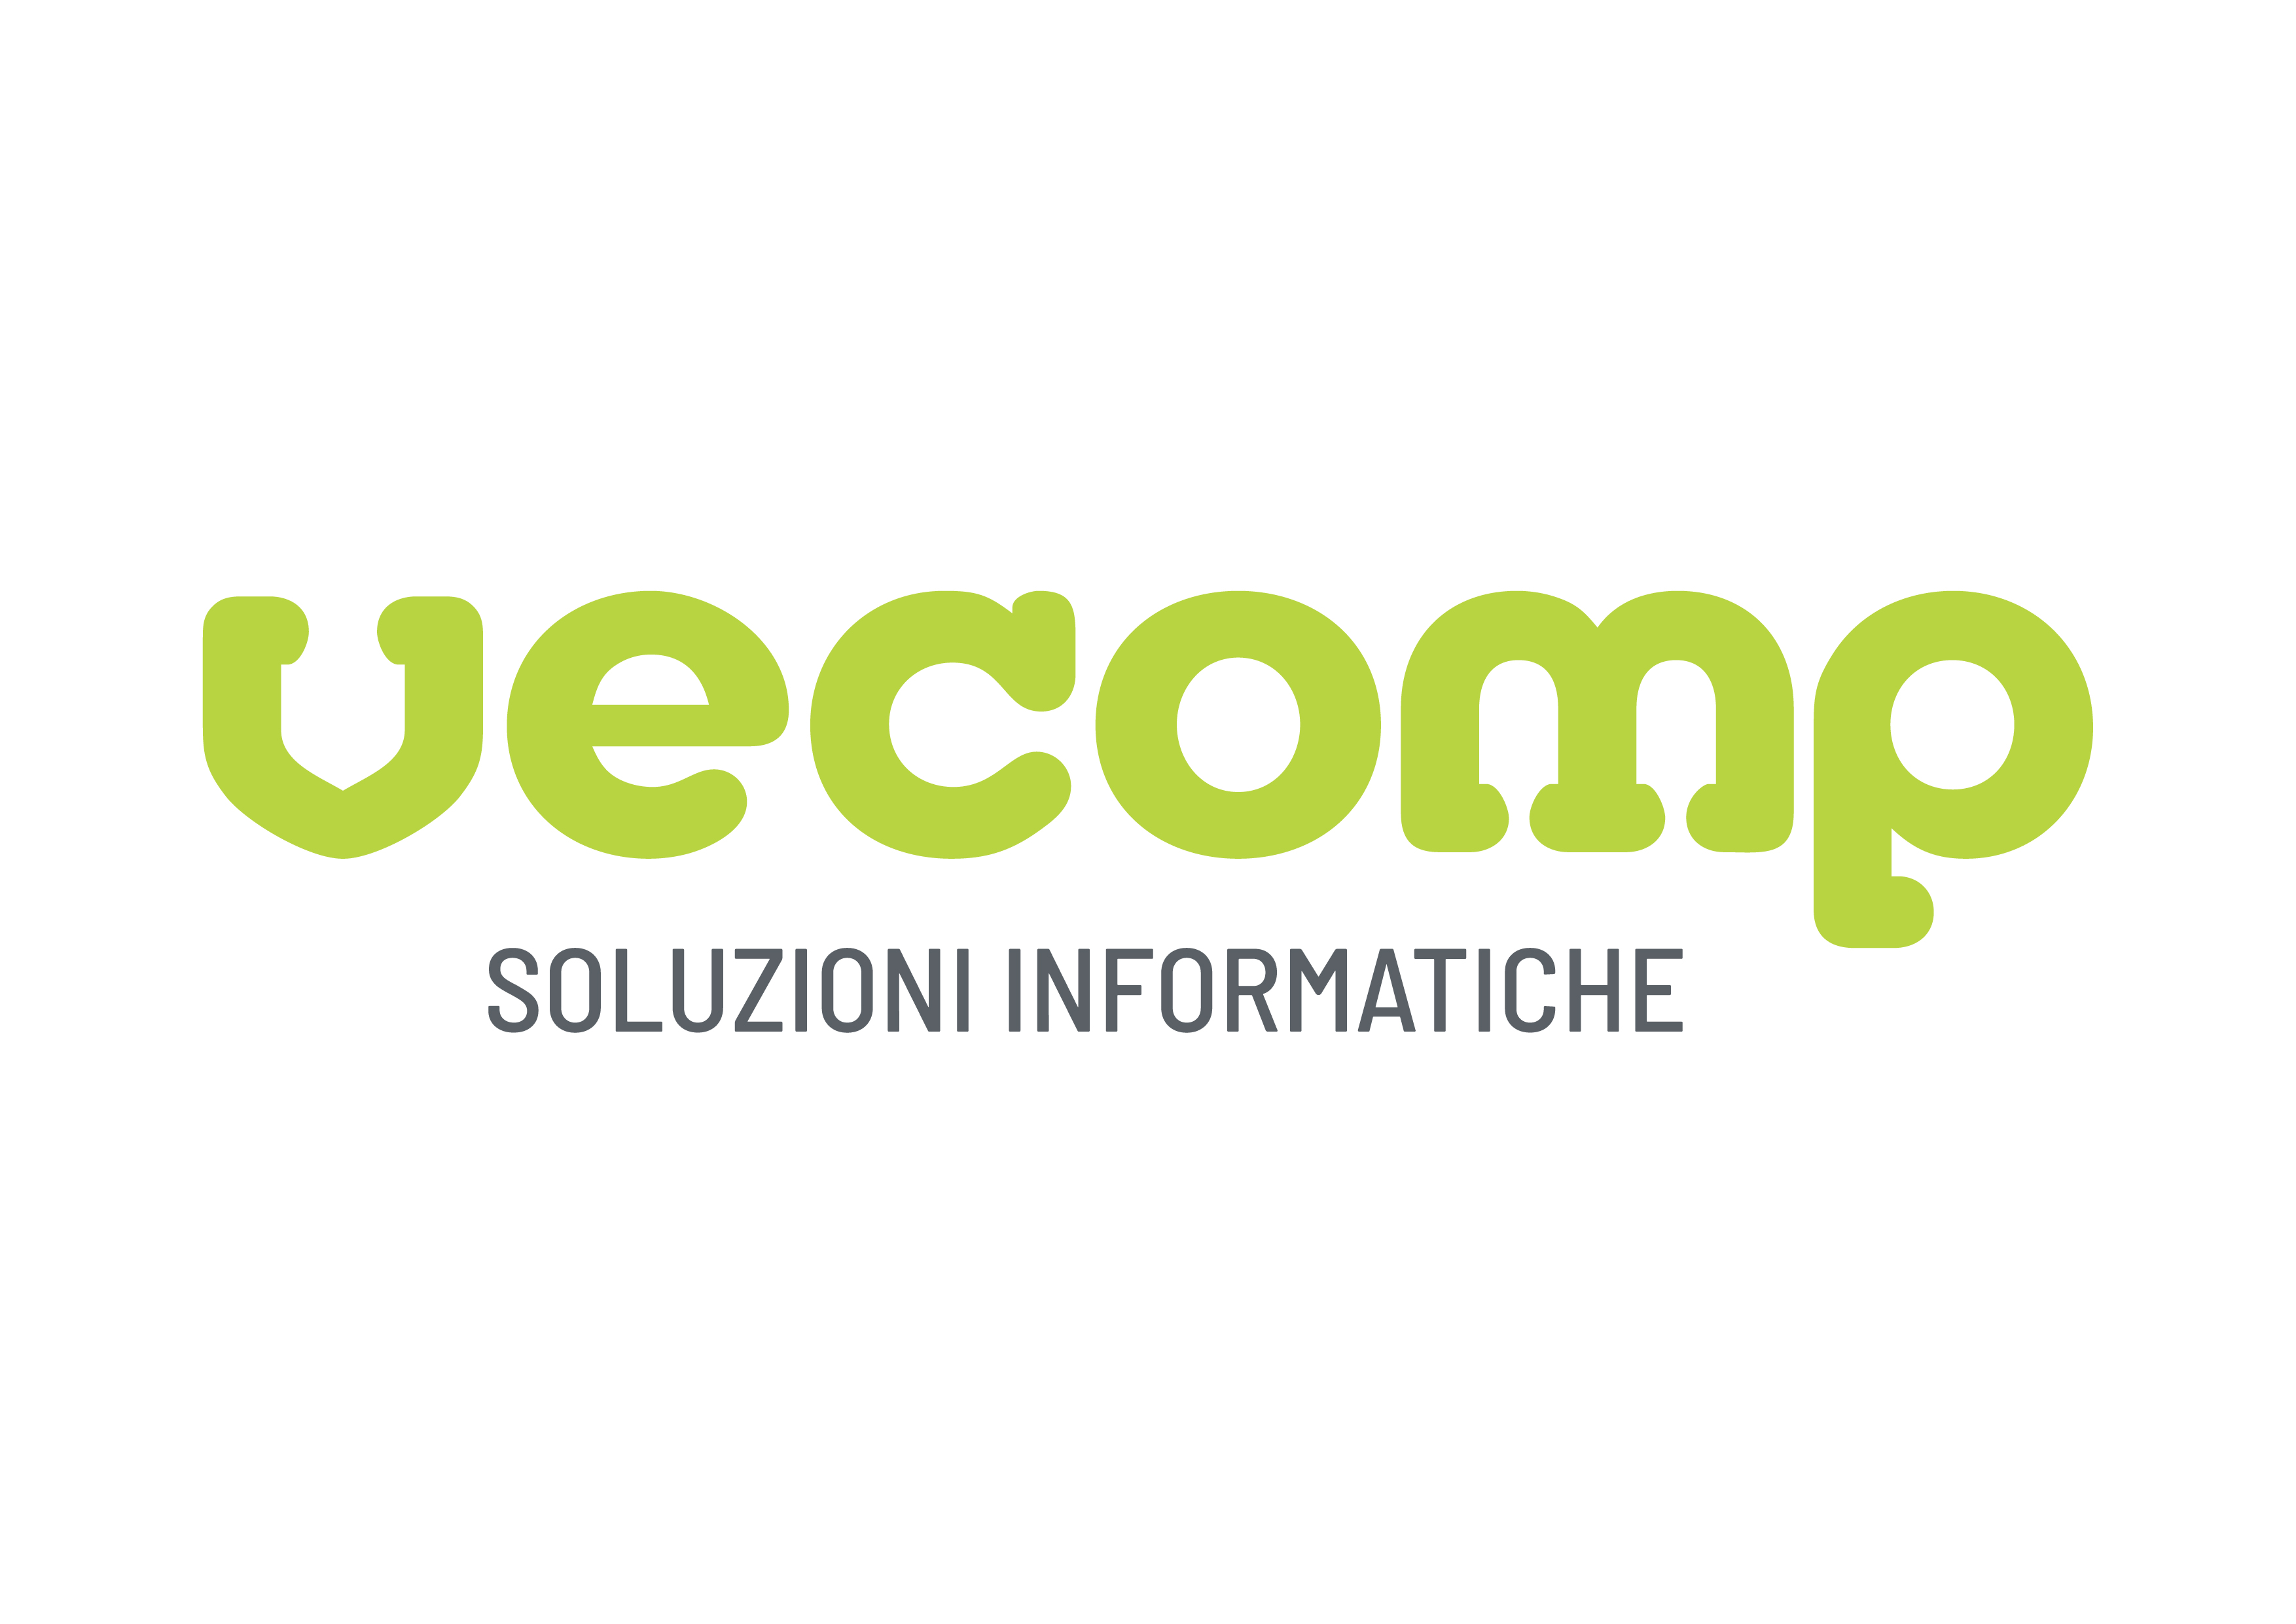 vecomp-logo-def-positivo.jpg